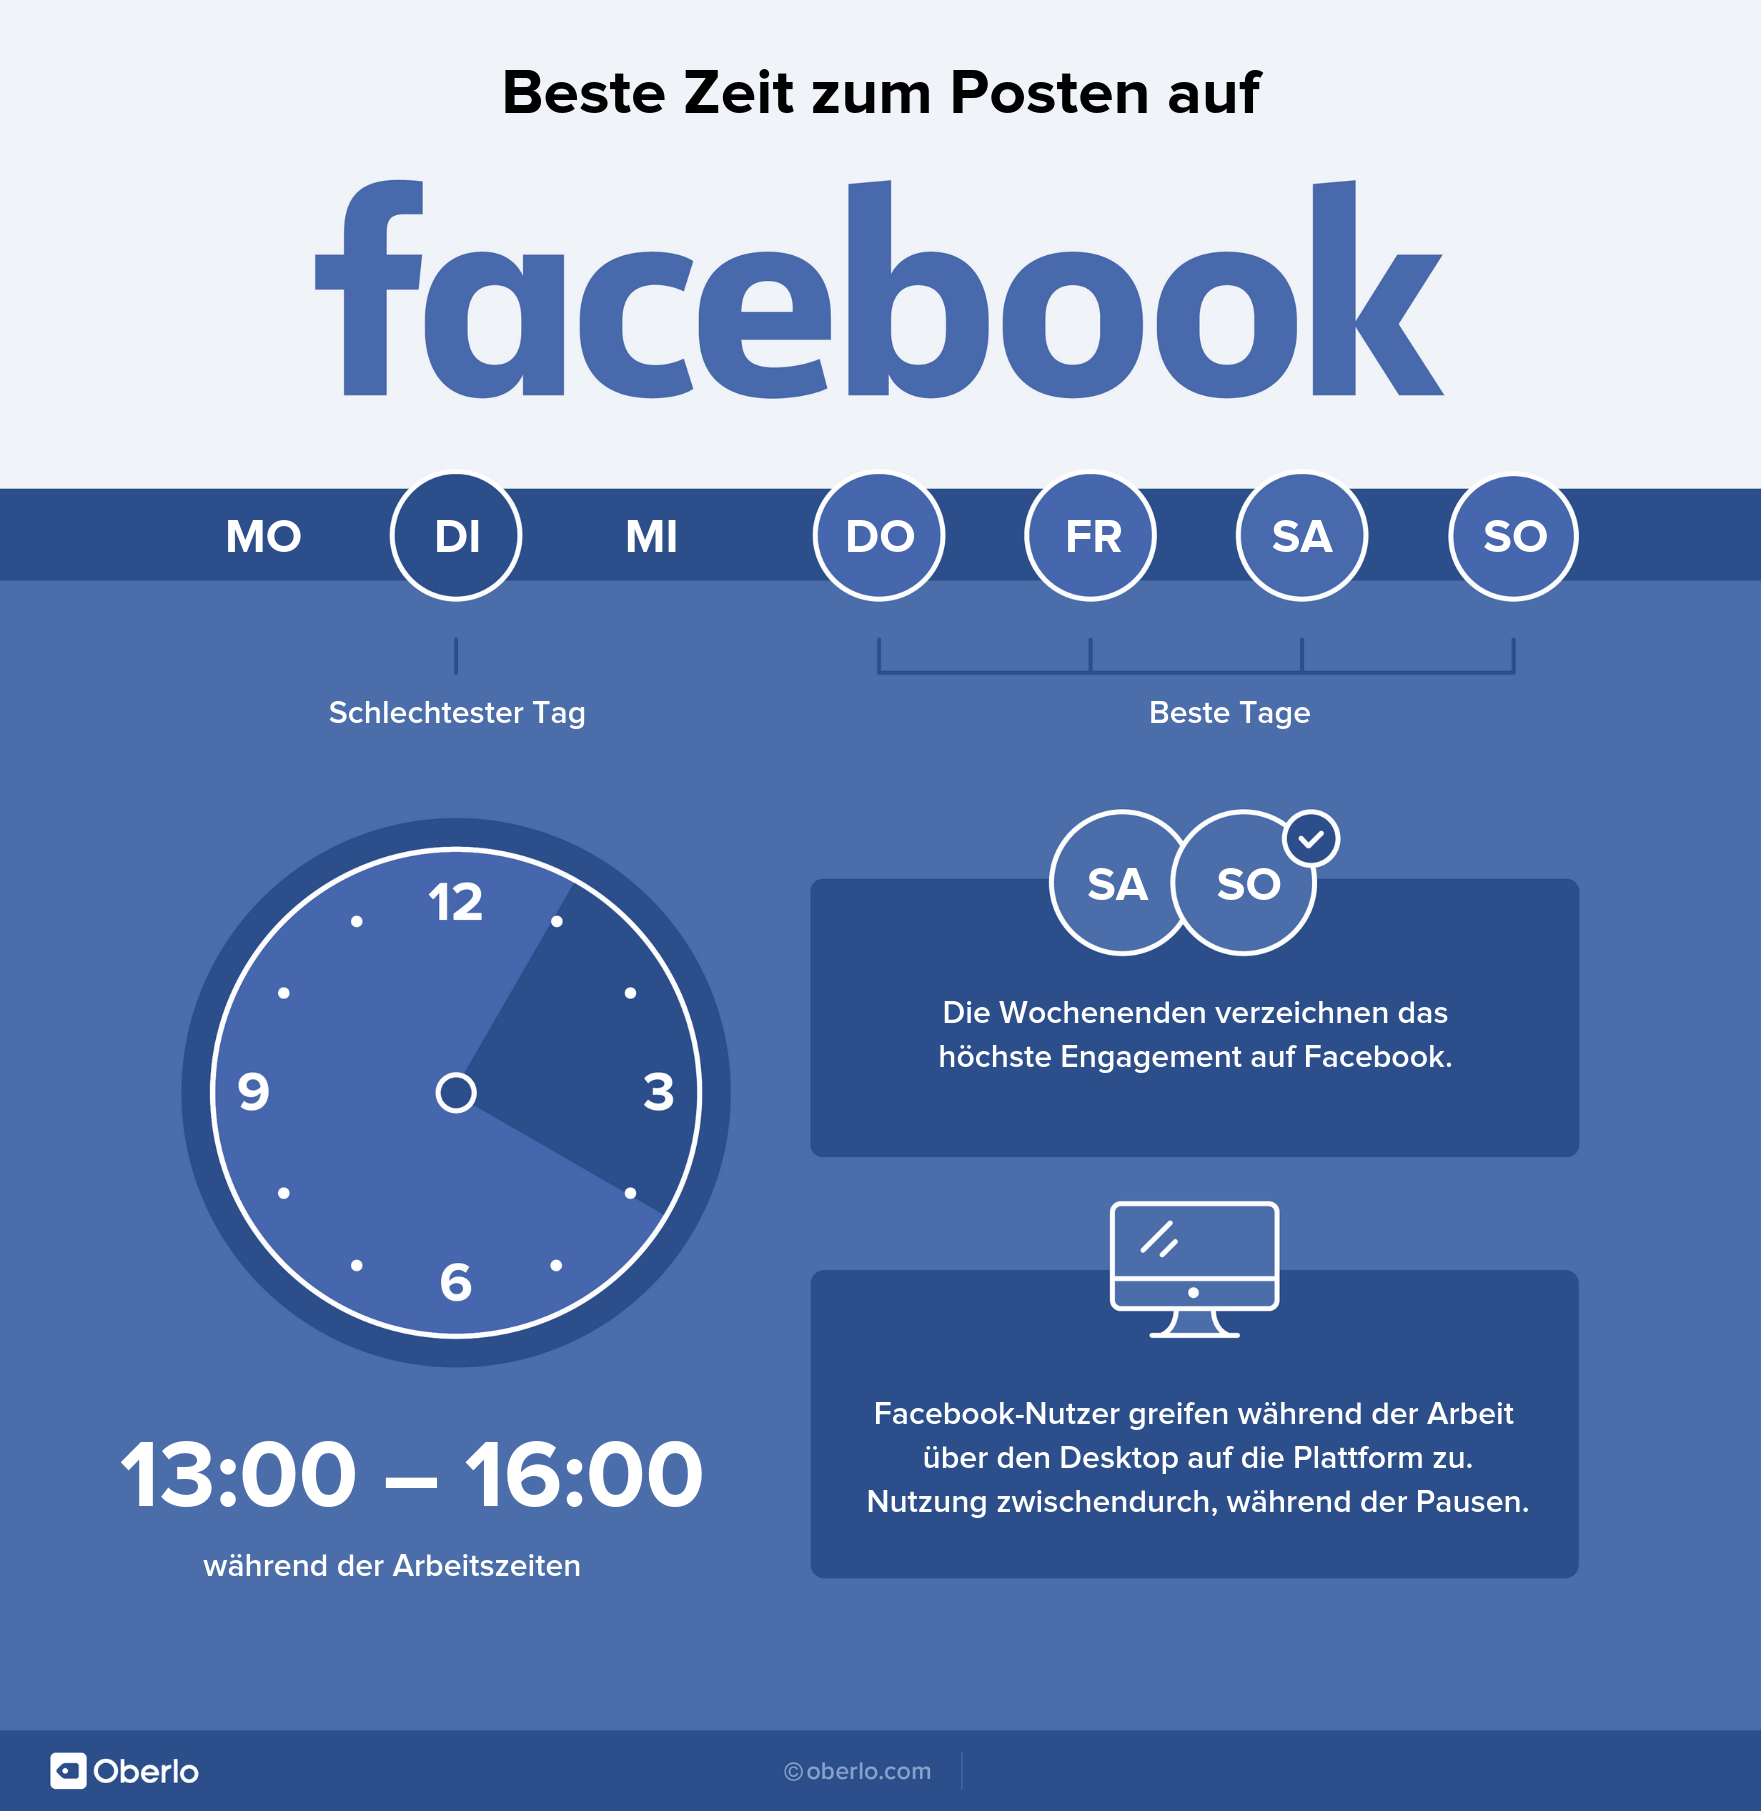 Beste Zeit zum Posten - Facebook Infografik